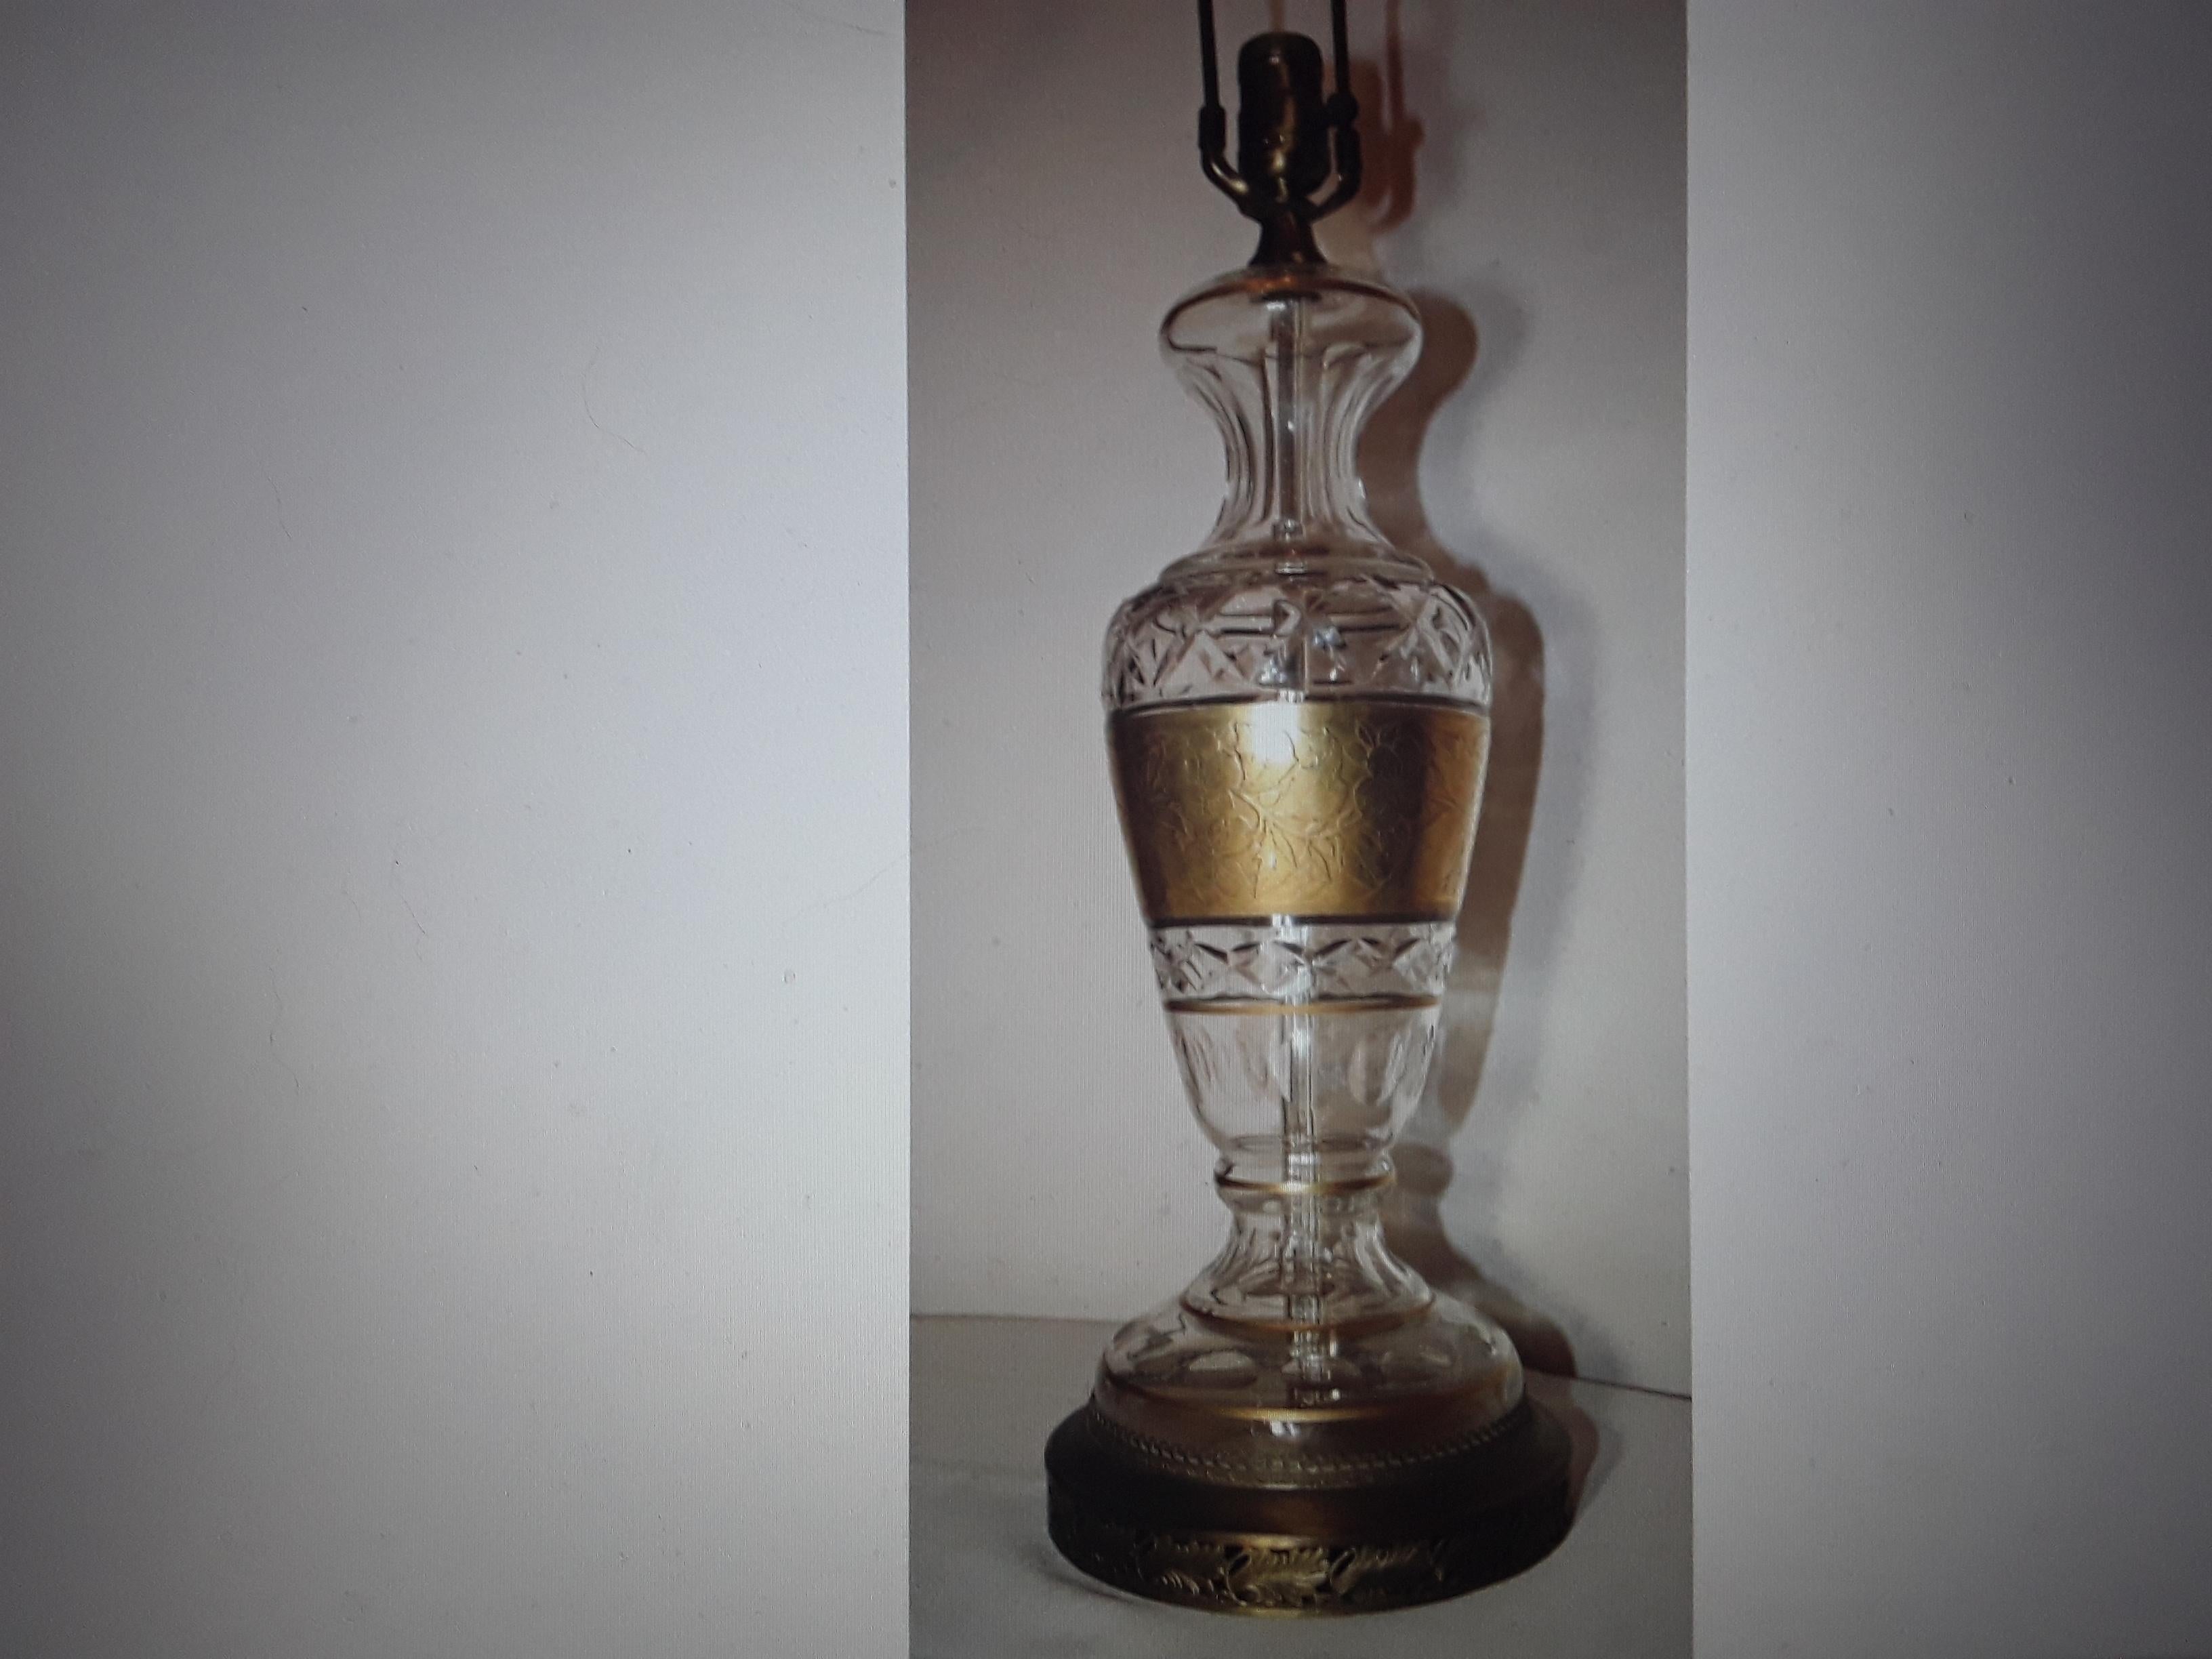 Superbe lampe de table en cristal taillé des années 1920, attribuée à Josef Hoffmann Wiener Werkstatte. Magnifique bandeau floral doré et la lampe est sur une base en métal doré.